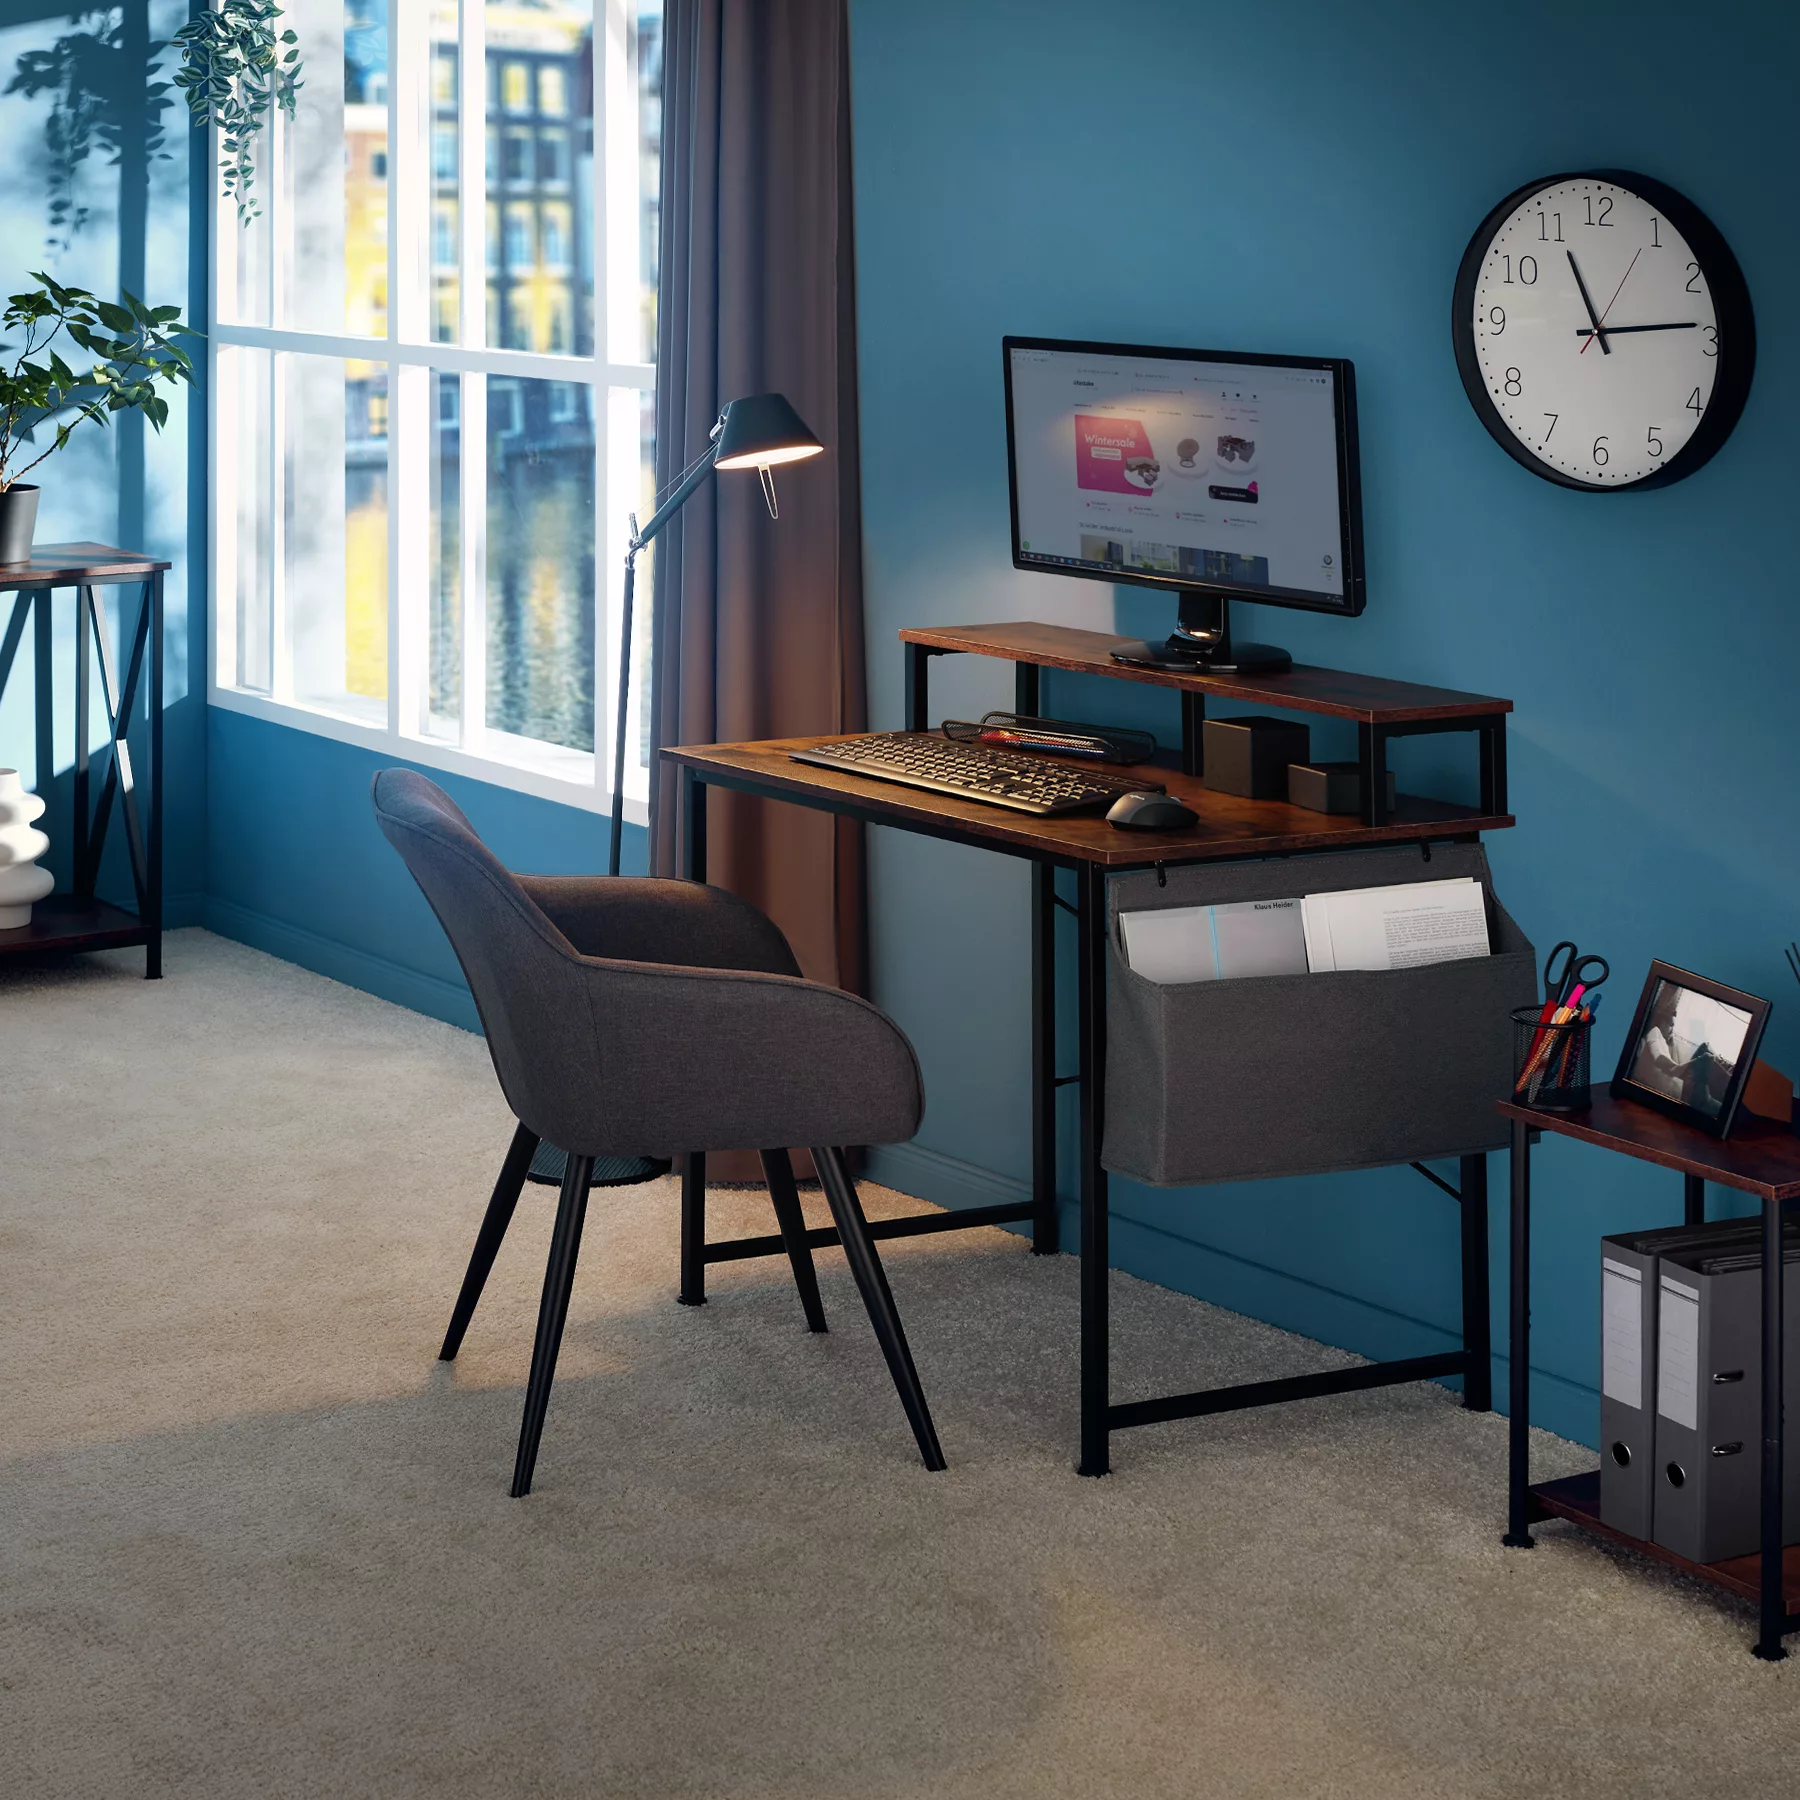 Schreibtisch mit Ablage und Stofftasche - Industrial Holz dunkel, rustikal, günstig online kaufen